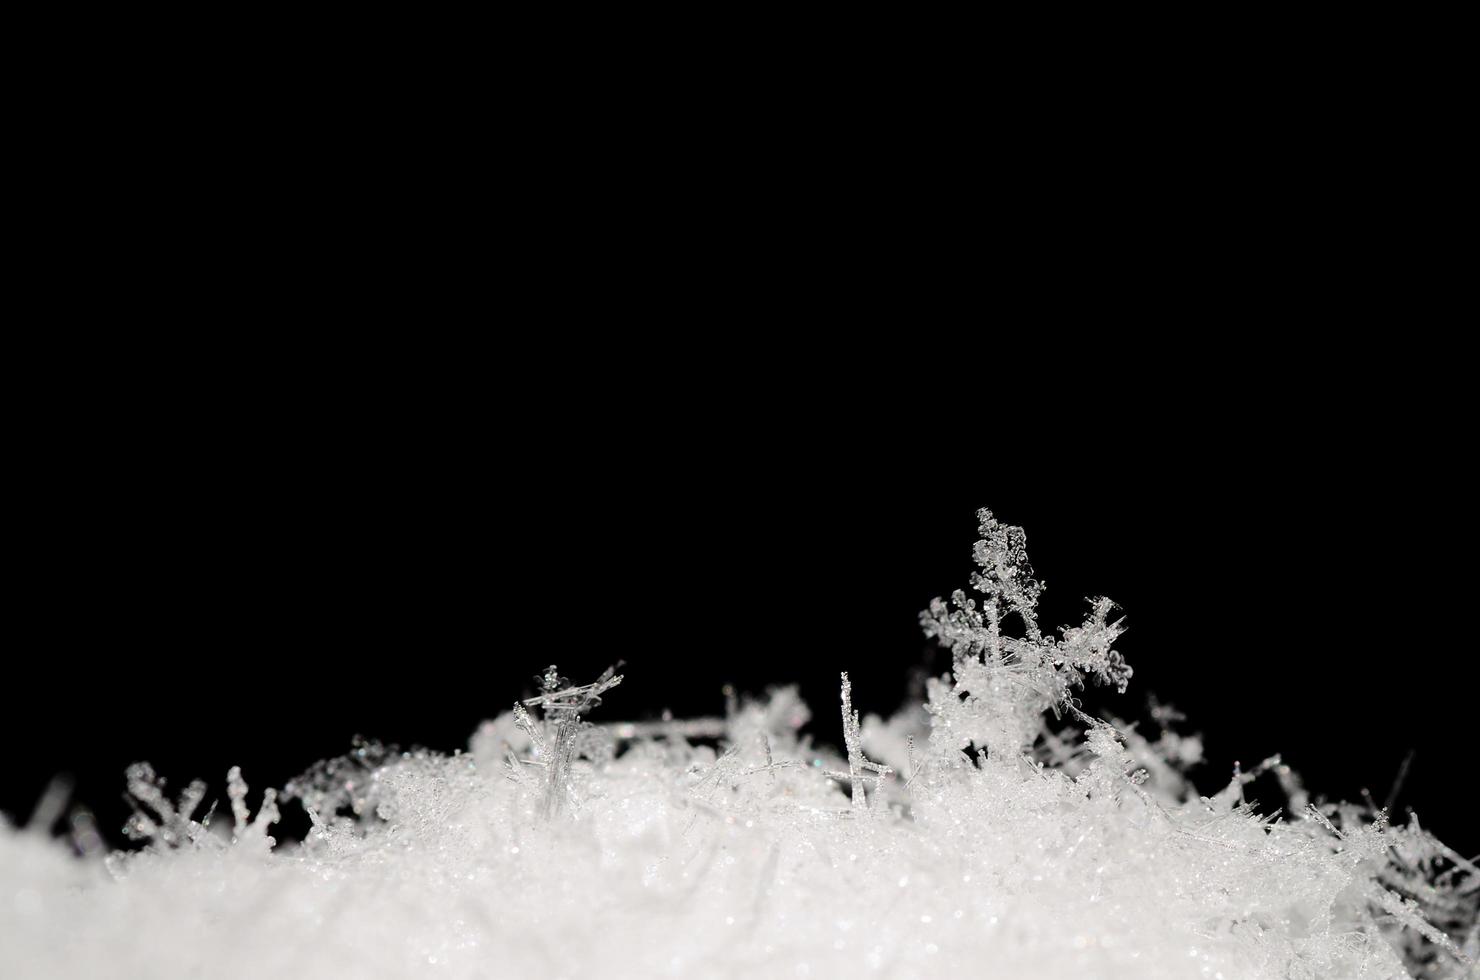 zarte schnürsenkel im schnee auf schwarz foto